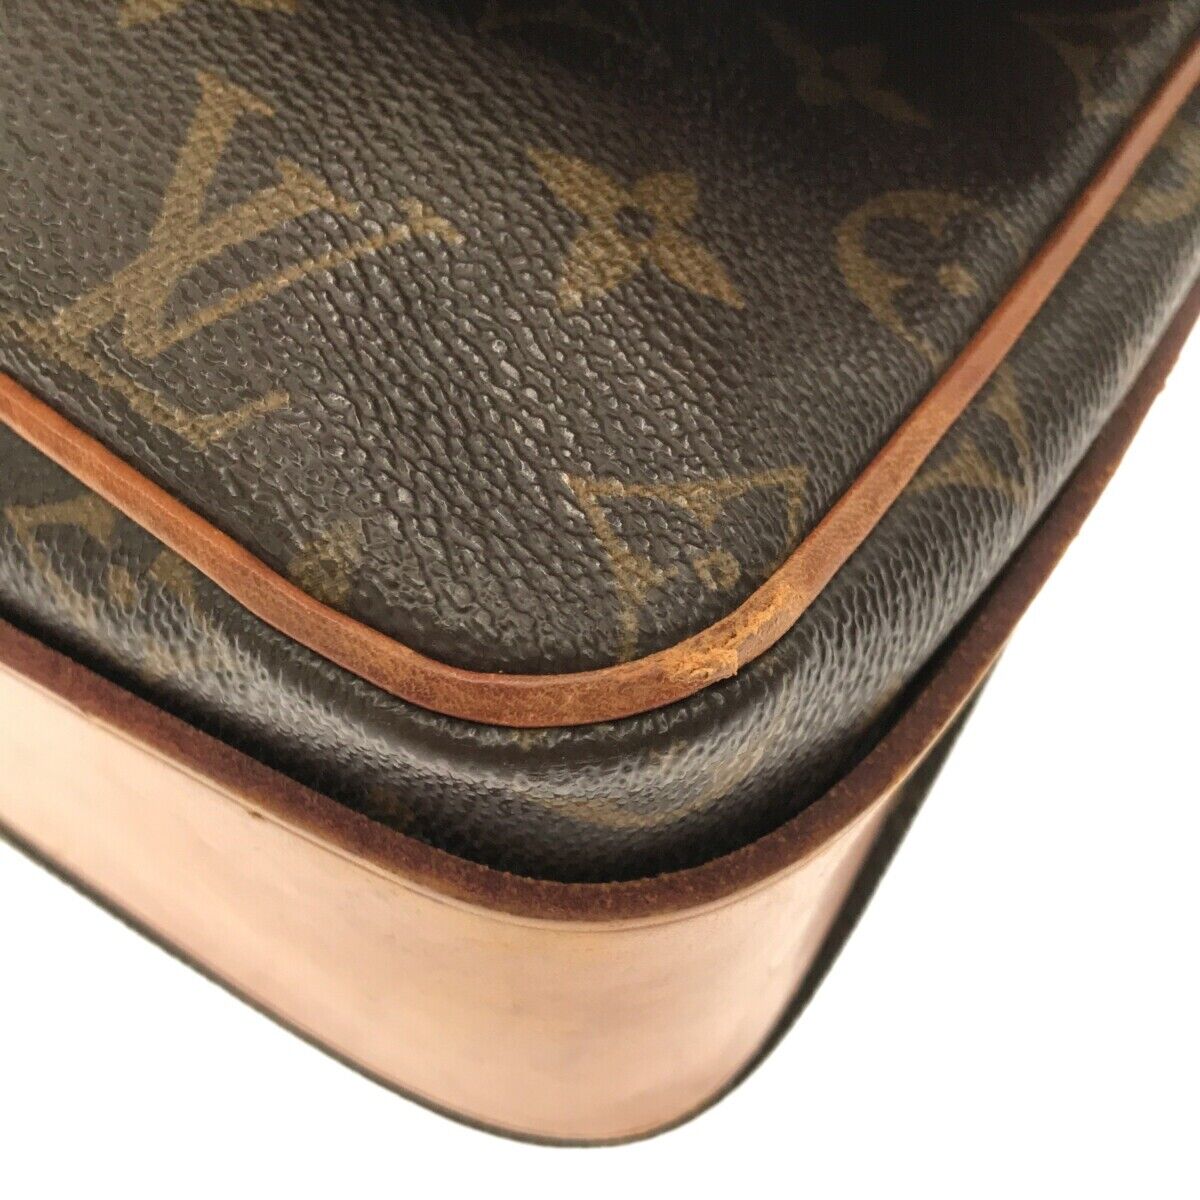 Louis Vuitton Keepall Bandoulière 55 Canvas Crossbody Bag for Men for sale  online